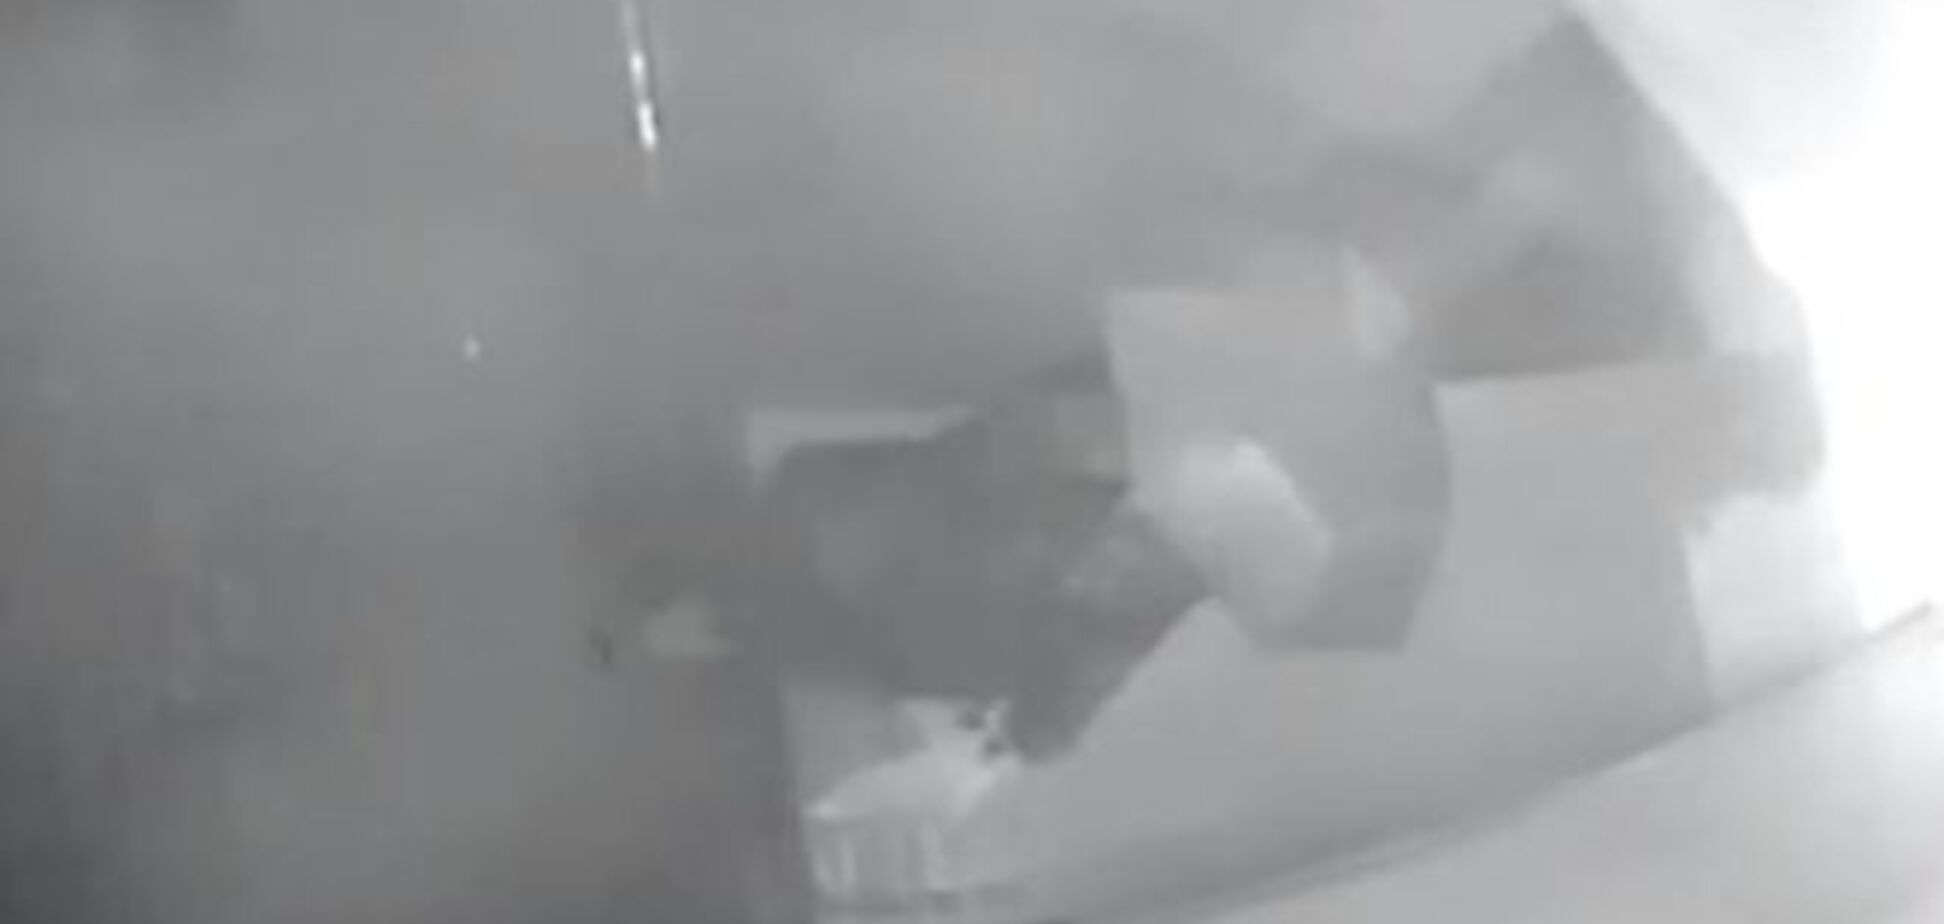 В Одессе видеокамеры зафиксировали подложившего взрывчатку человека и момент взрыва